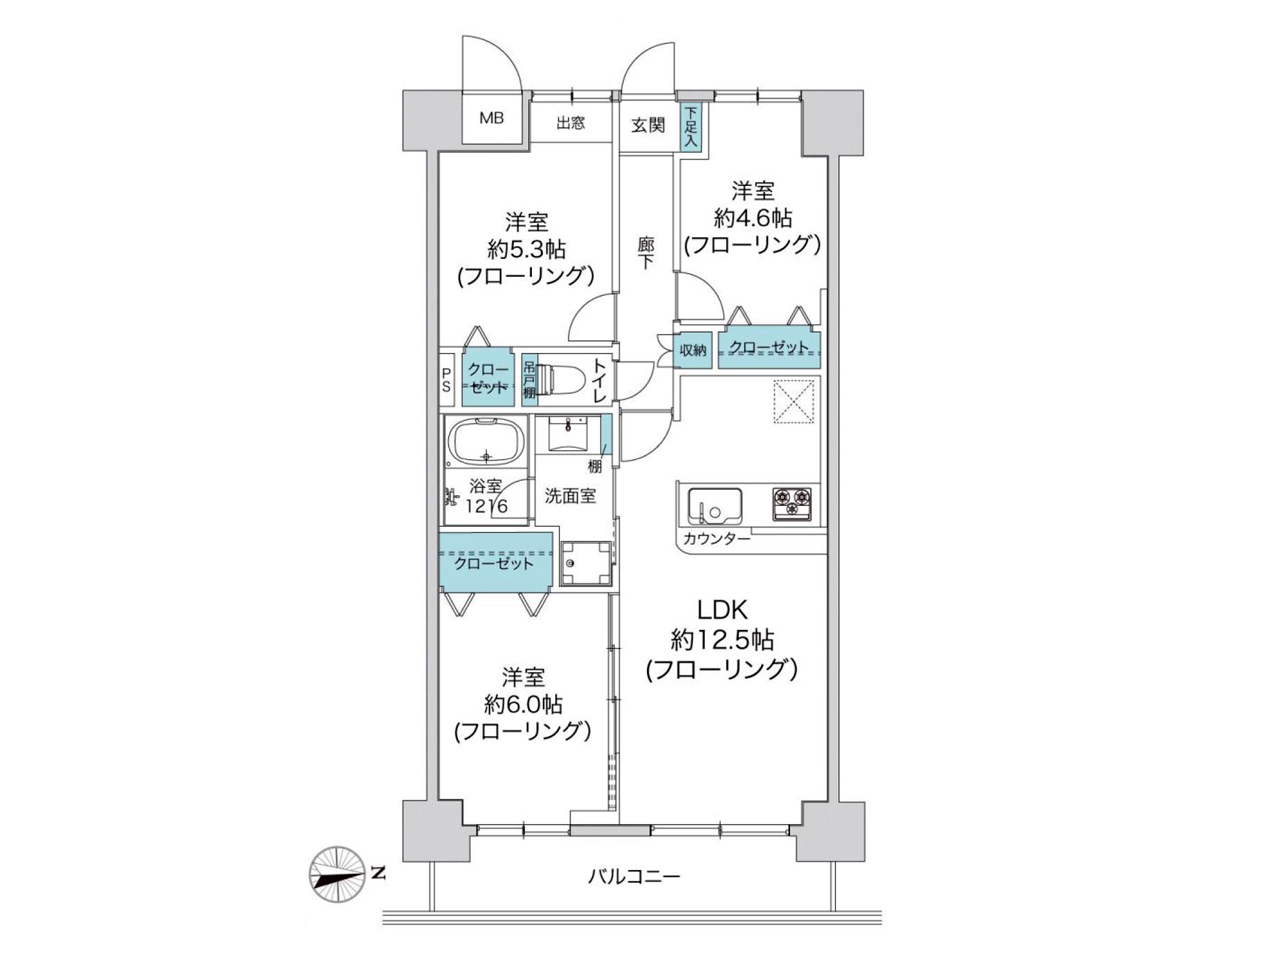 ライオンズマンション横浜駅西第二の画像